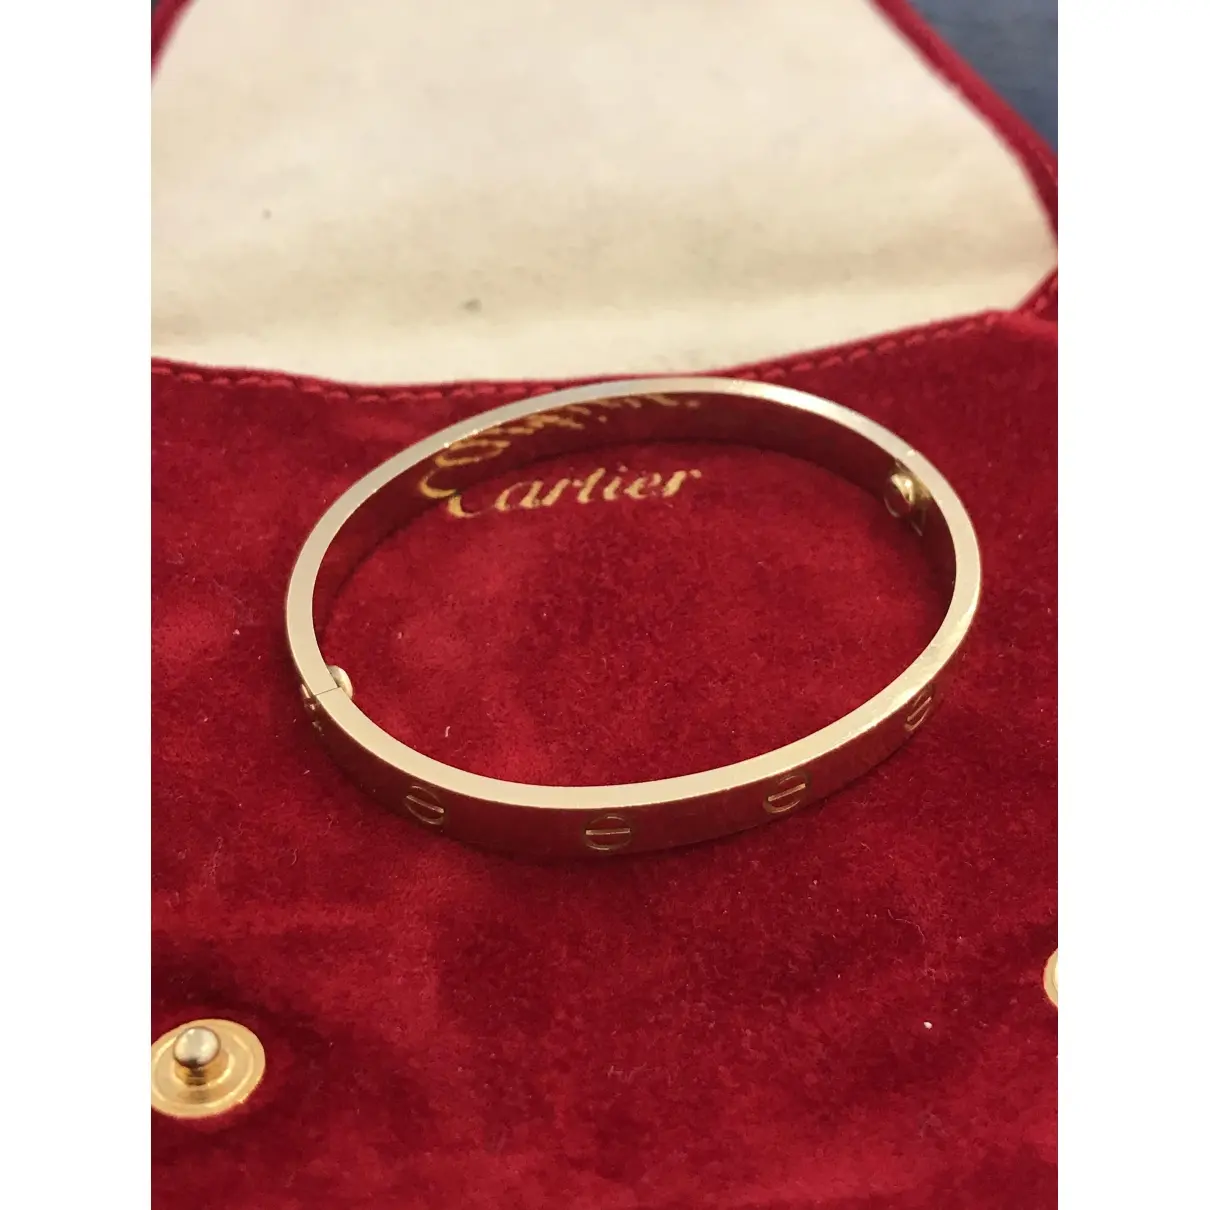 Buy Cartier Love yellow gold bracelet online